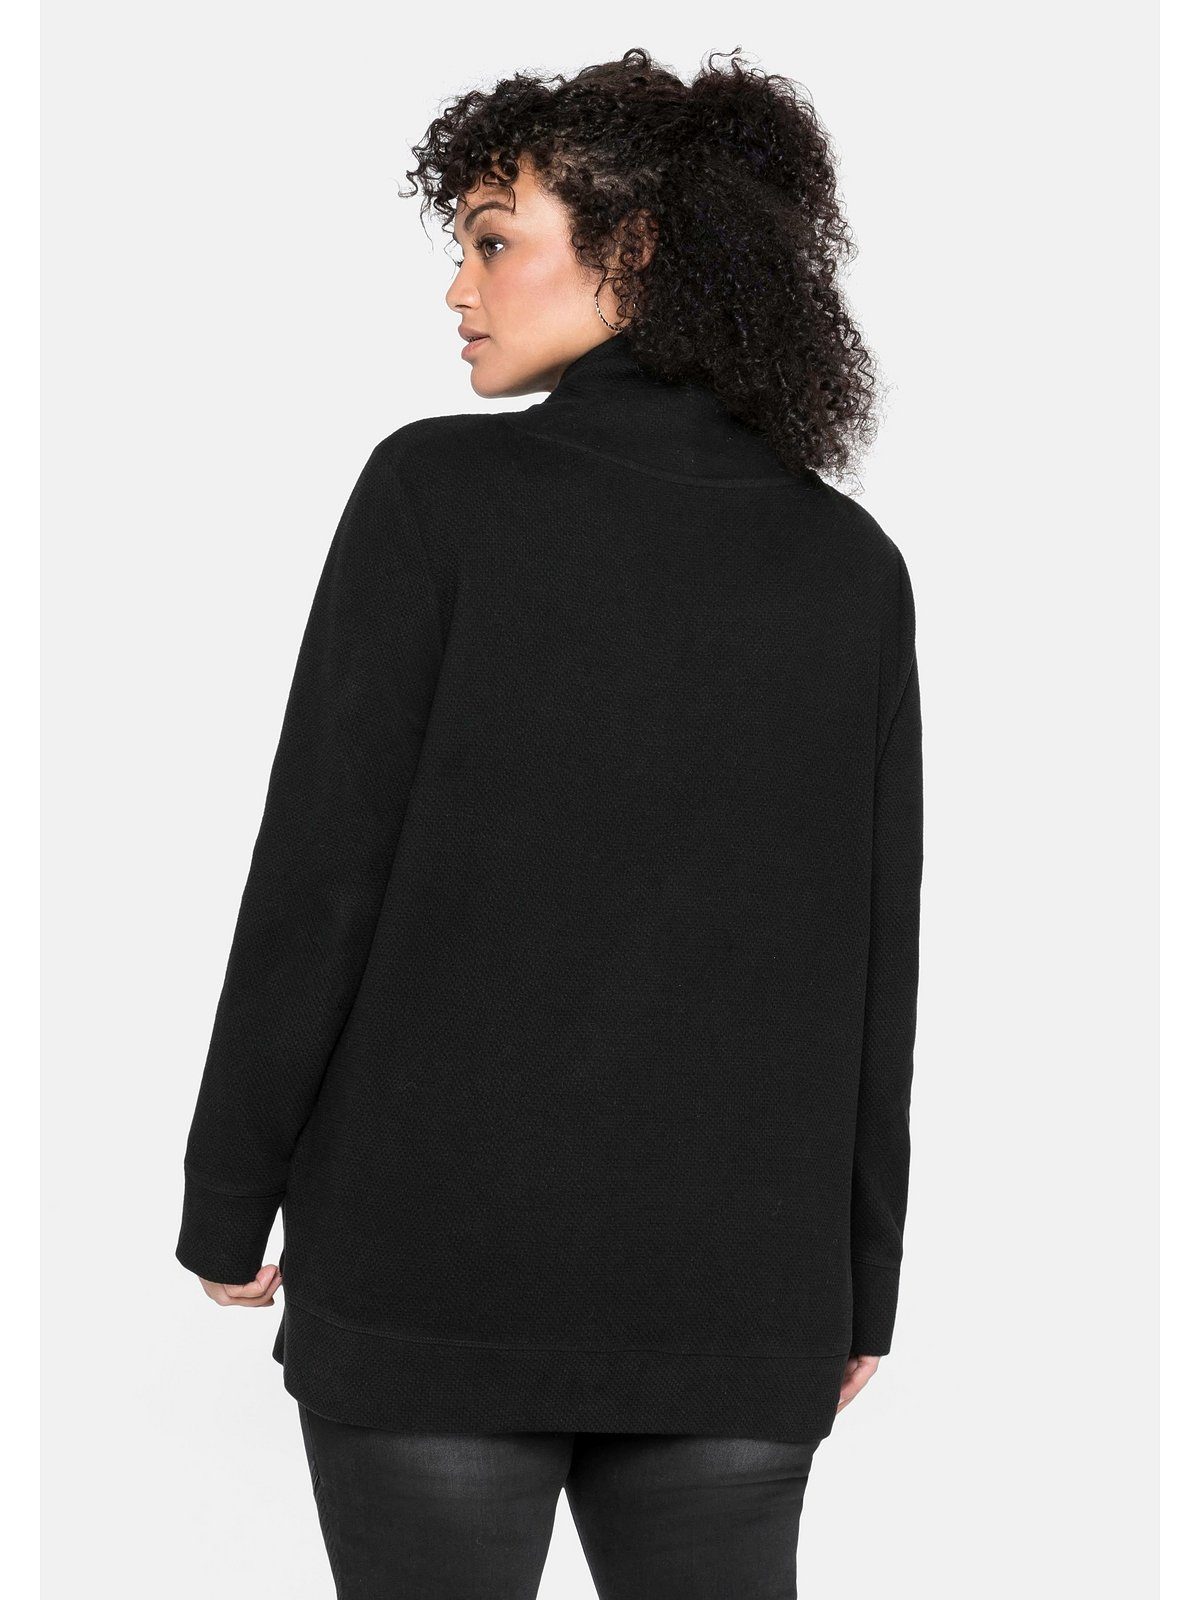 Sheego Sweatshirt Große in Größen schwarz Strukturqualität